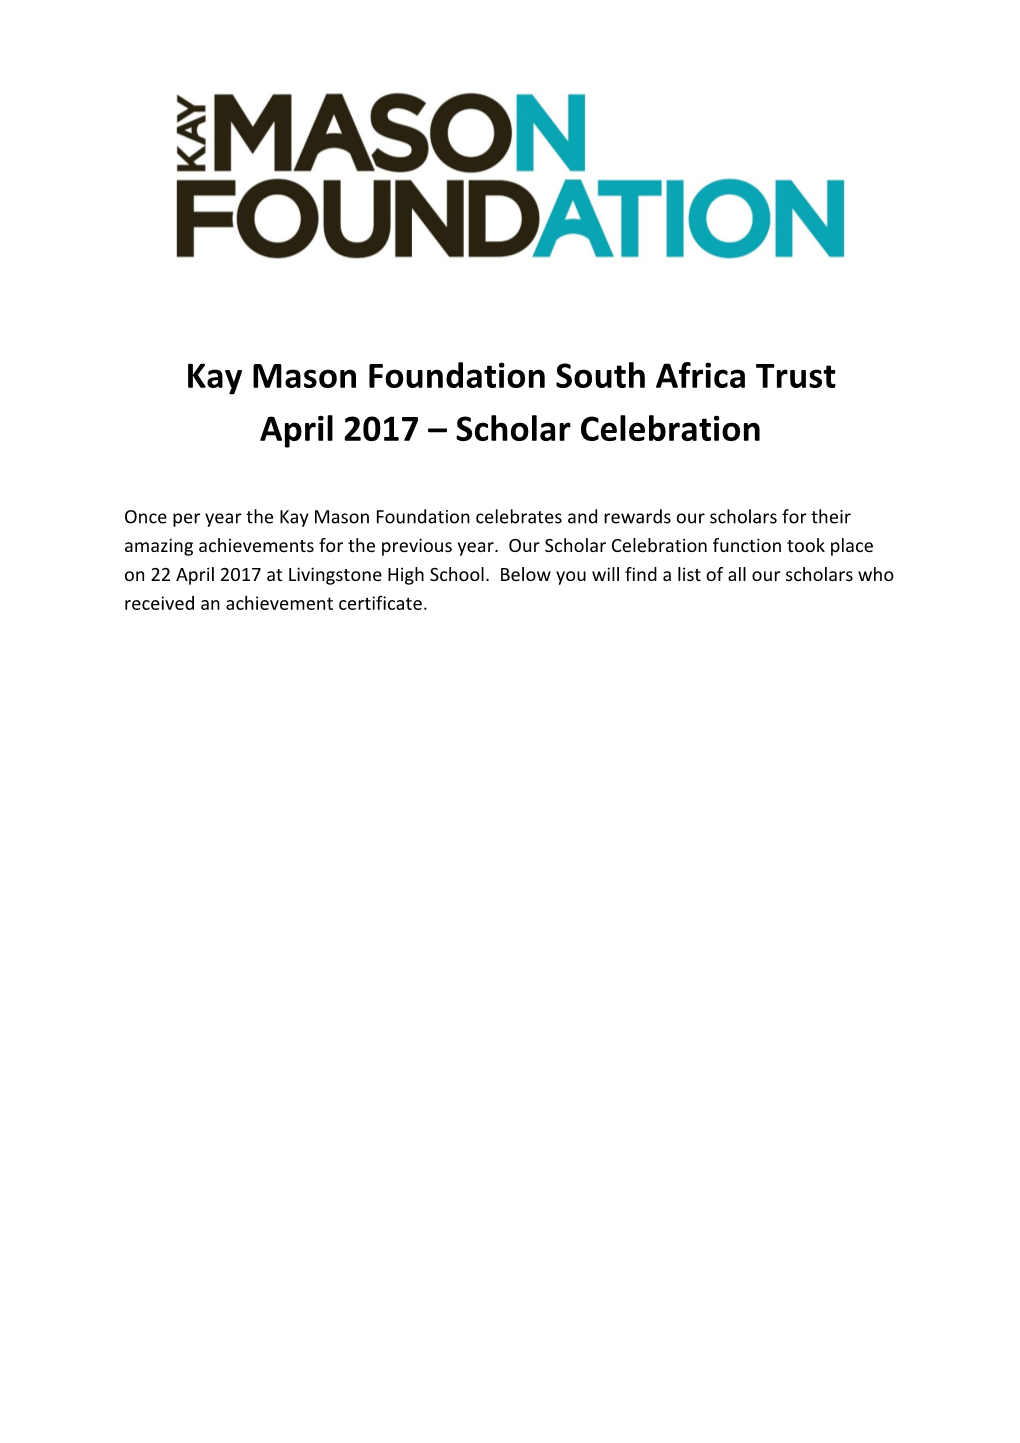 Kay Mason Foundation South Africa Trust April 2017 Scholar Celebration